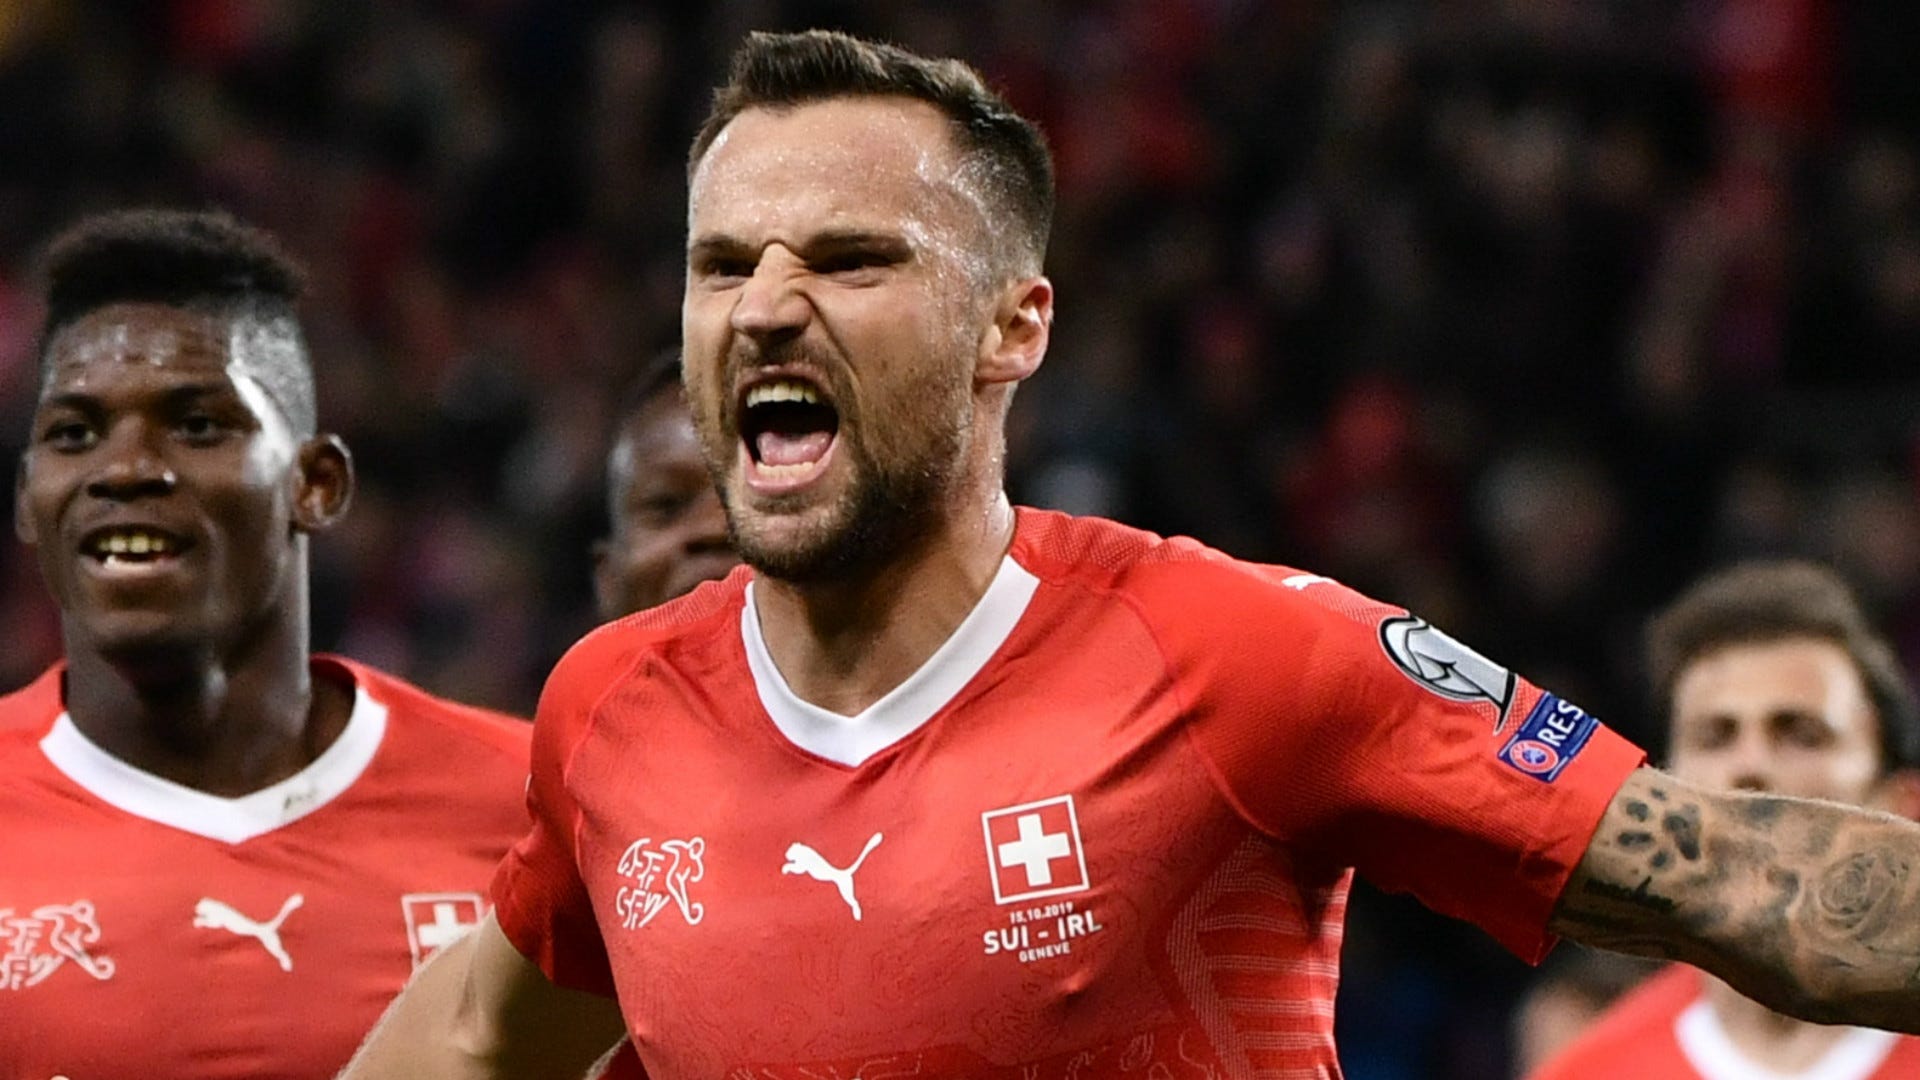 Schweiz gegen Kroatien heute im TV und LIVE-STREAM sehen Alles zur Übertragung des Freundschaftsspiels Goal Deutschland